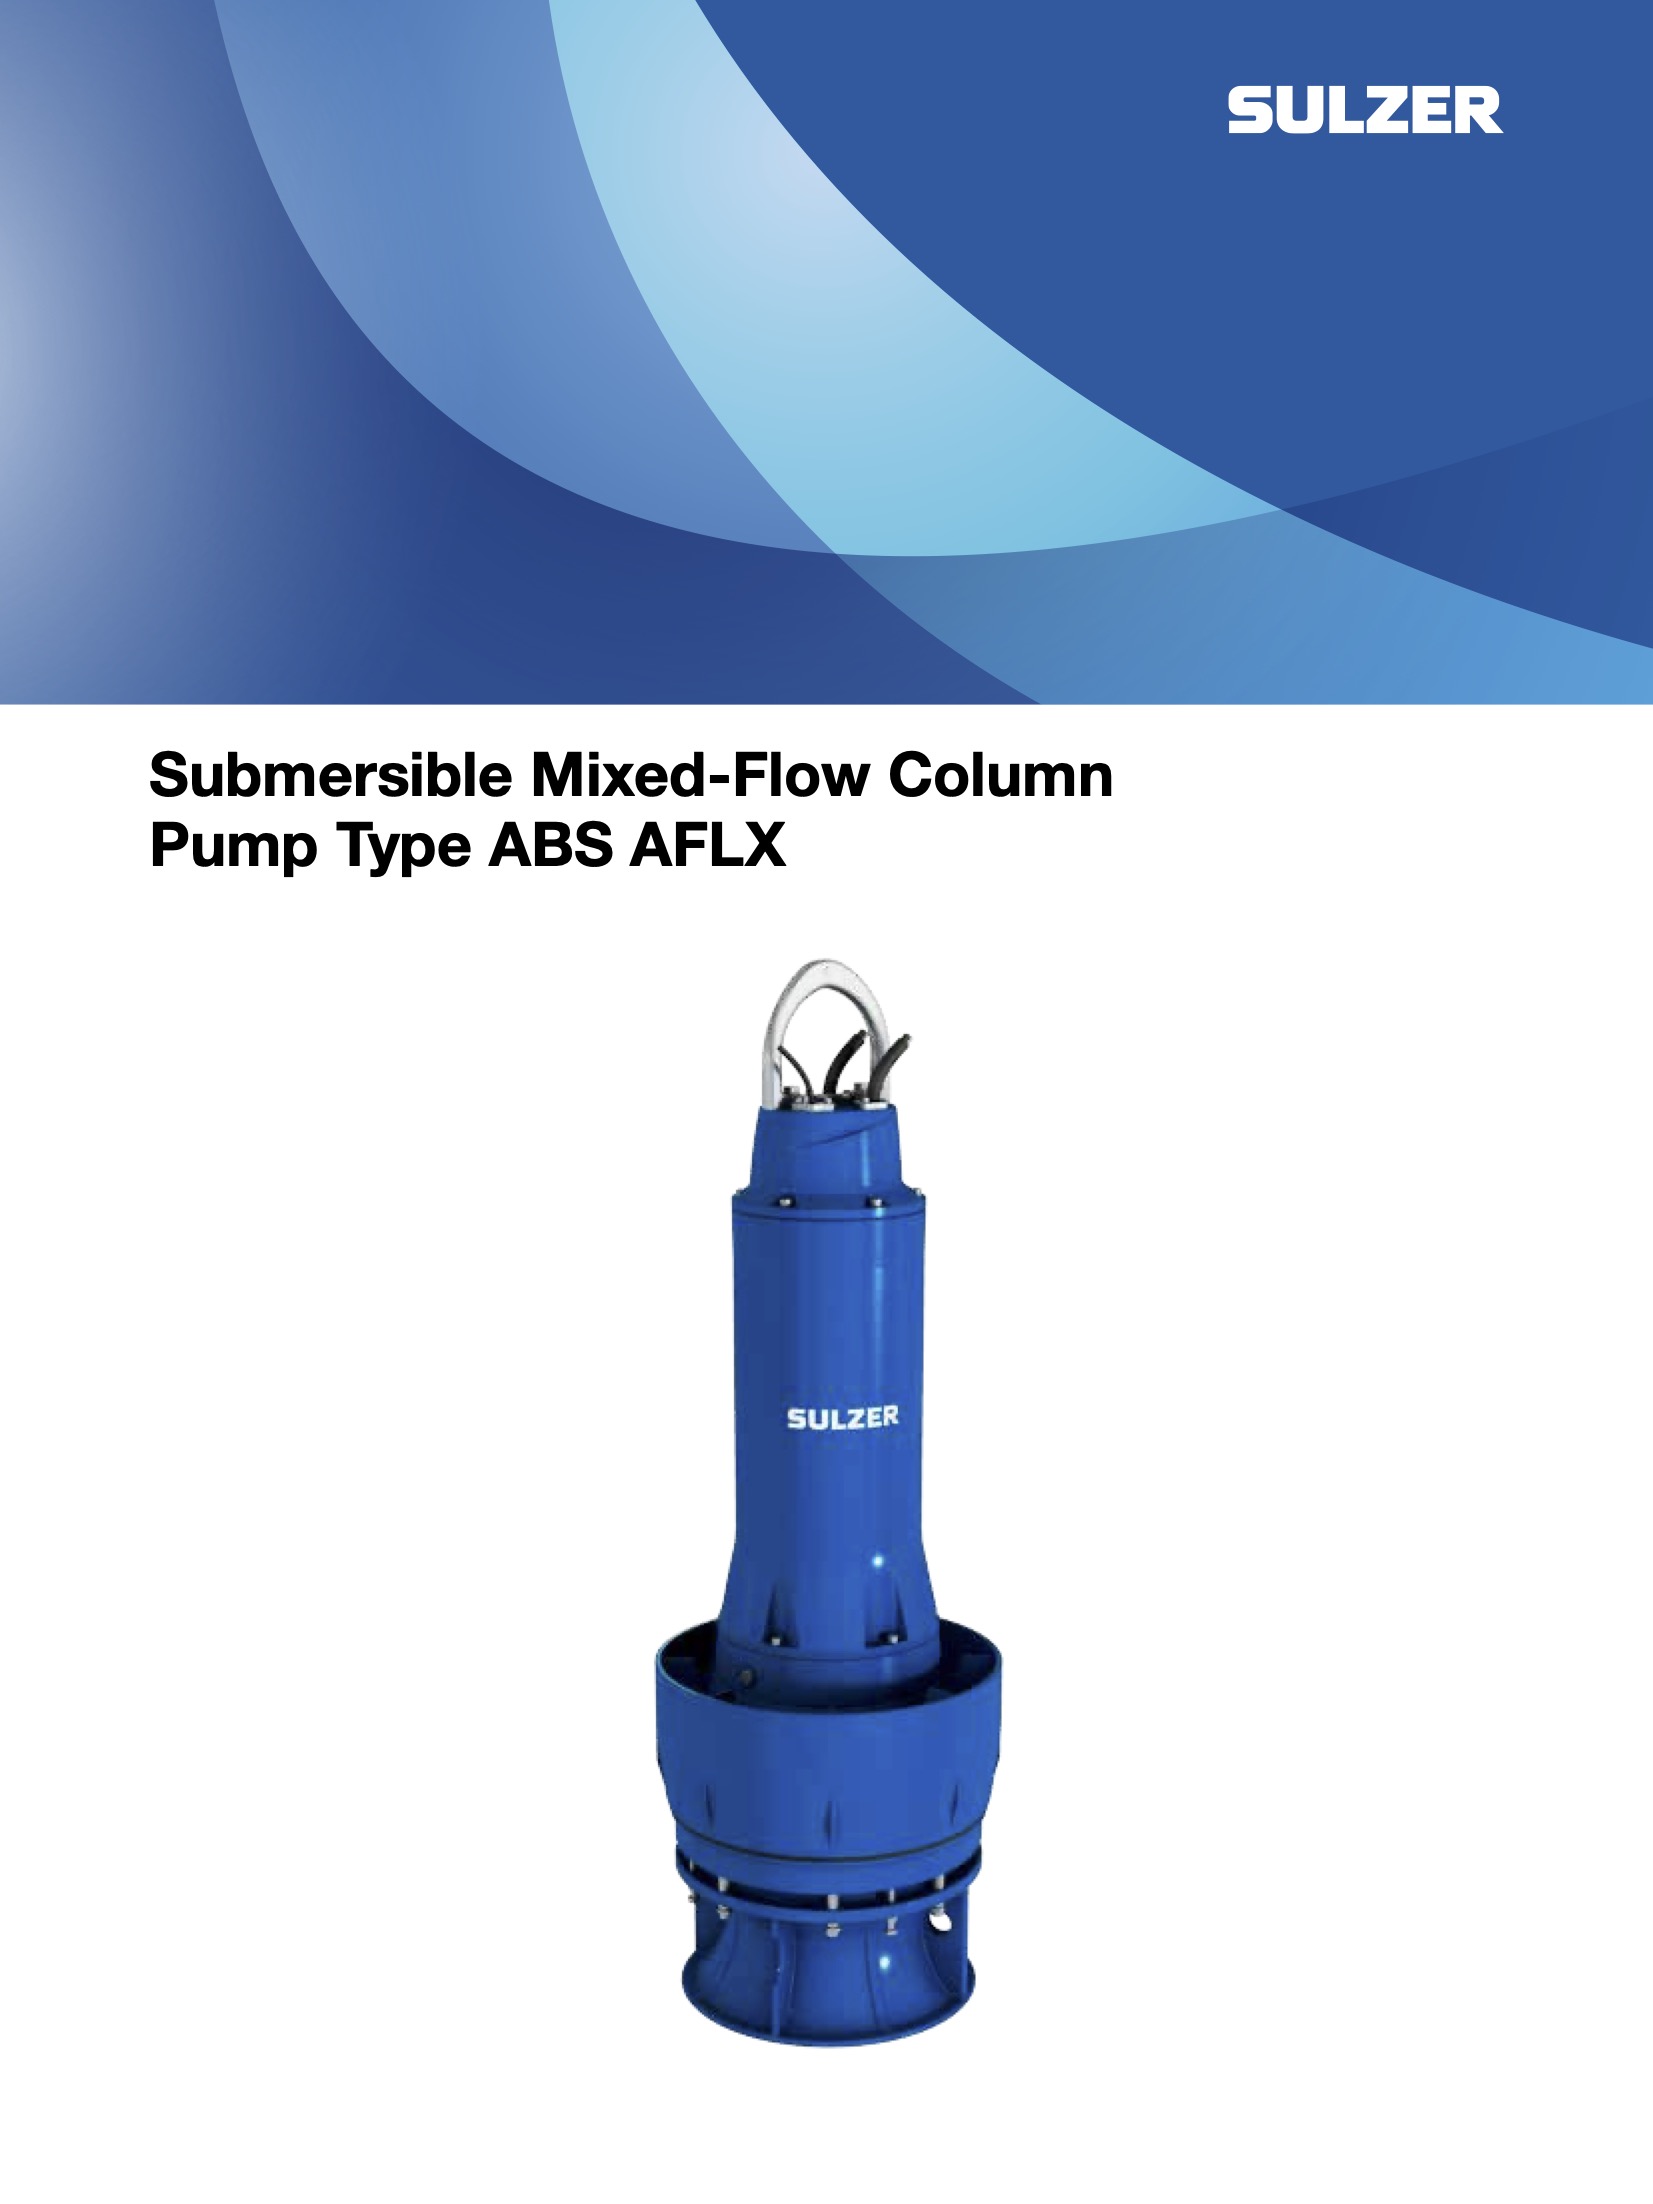 Axial flow pumps brochure